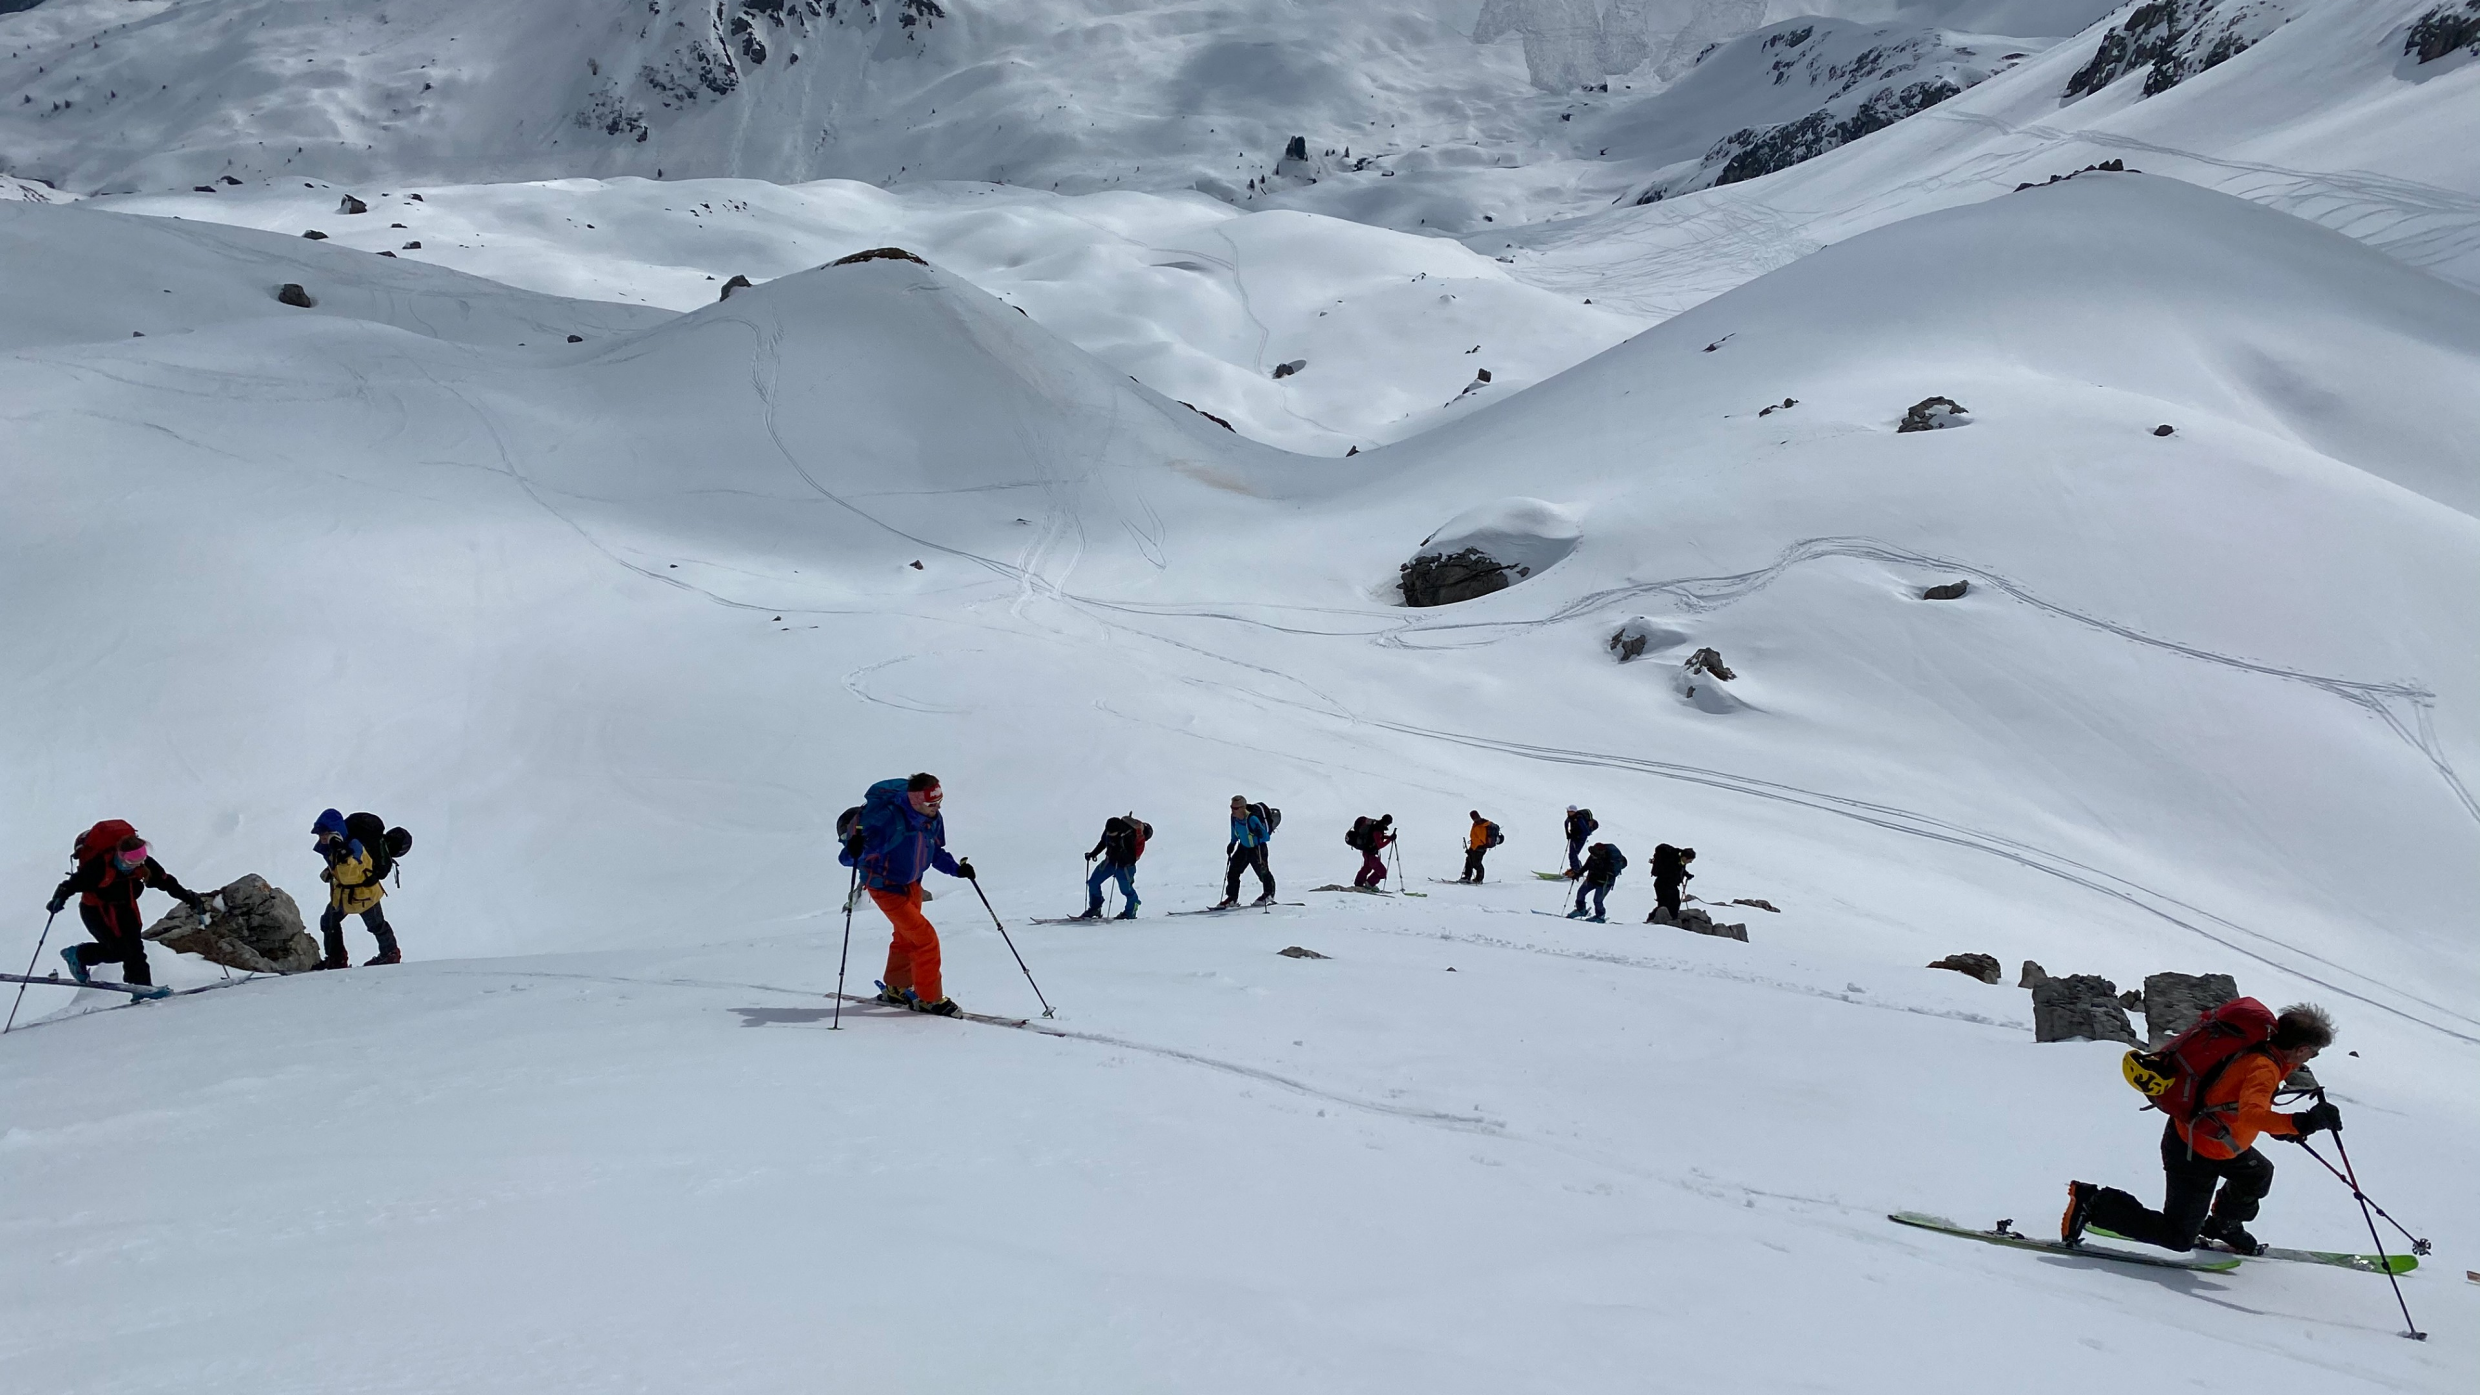 Berg+Ski: Zick und Zack – Spitzkehren am Laufmeter während der Skisafari in Lenzerheide/Arosa